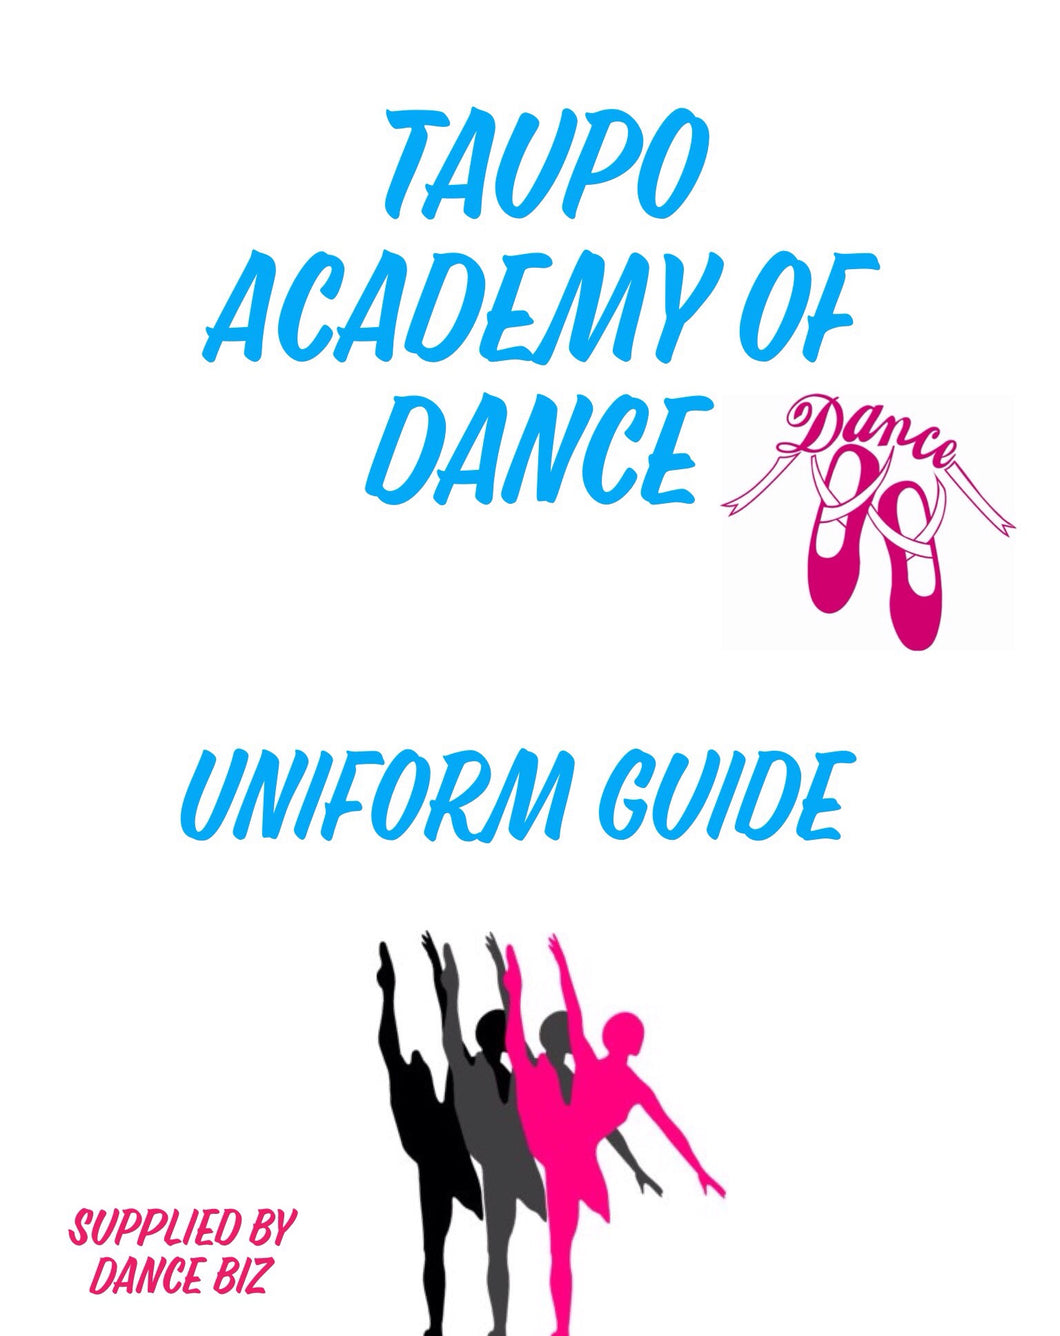 Taupo Academy of Dance - Contemporary Uniform